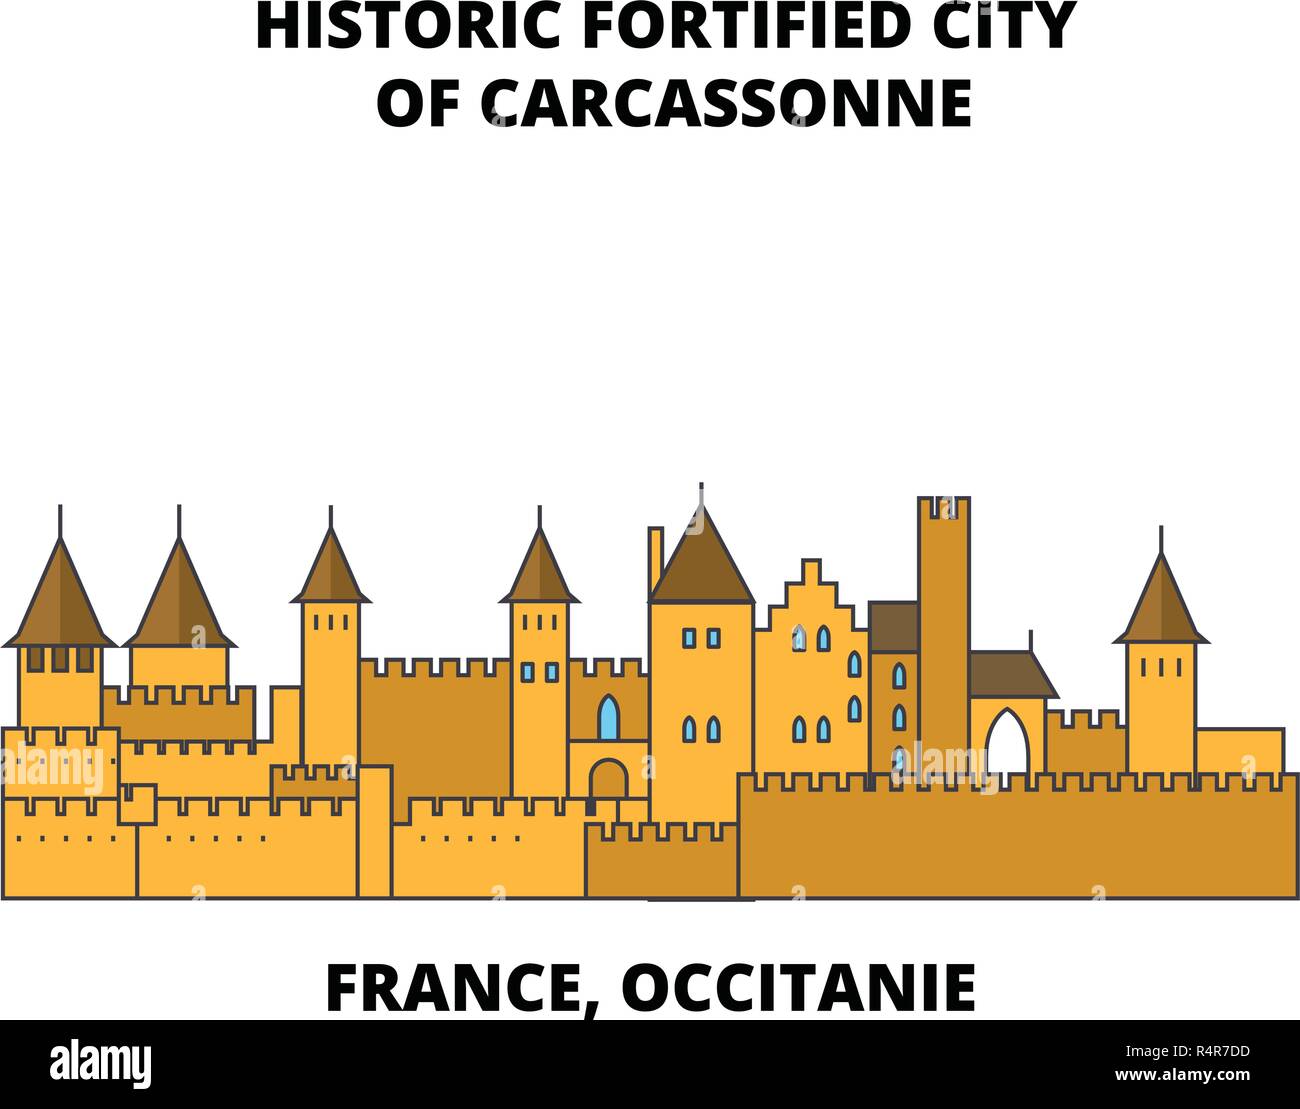 Frankreich, Royal - historische Festungsstadt Carcassonne line Reisen Sehenswürdigkeit, Skyline, vektor design. Frankreich, Royal - historische Festungsstadt Carcassonne lineare Abbildung. Stock Vektor